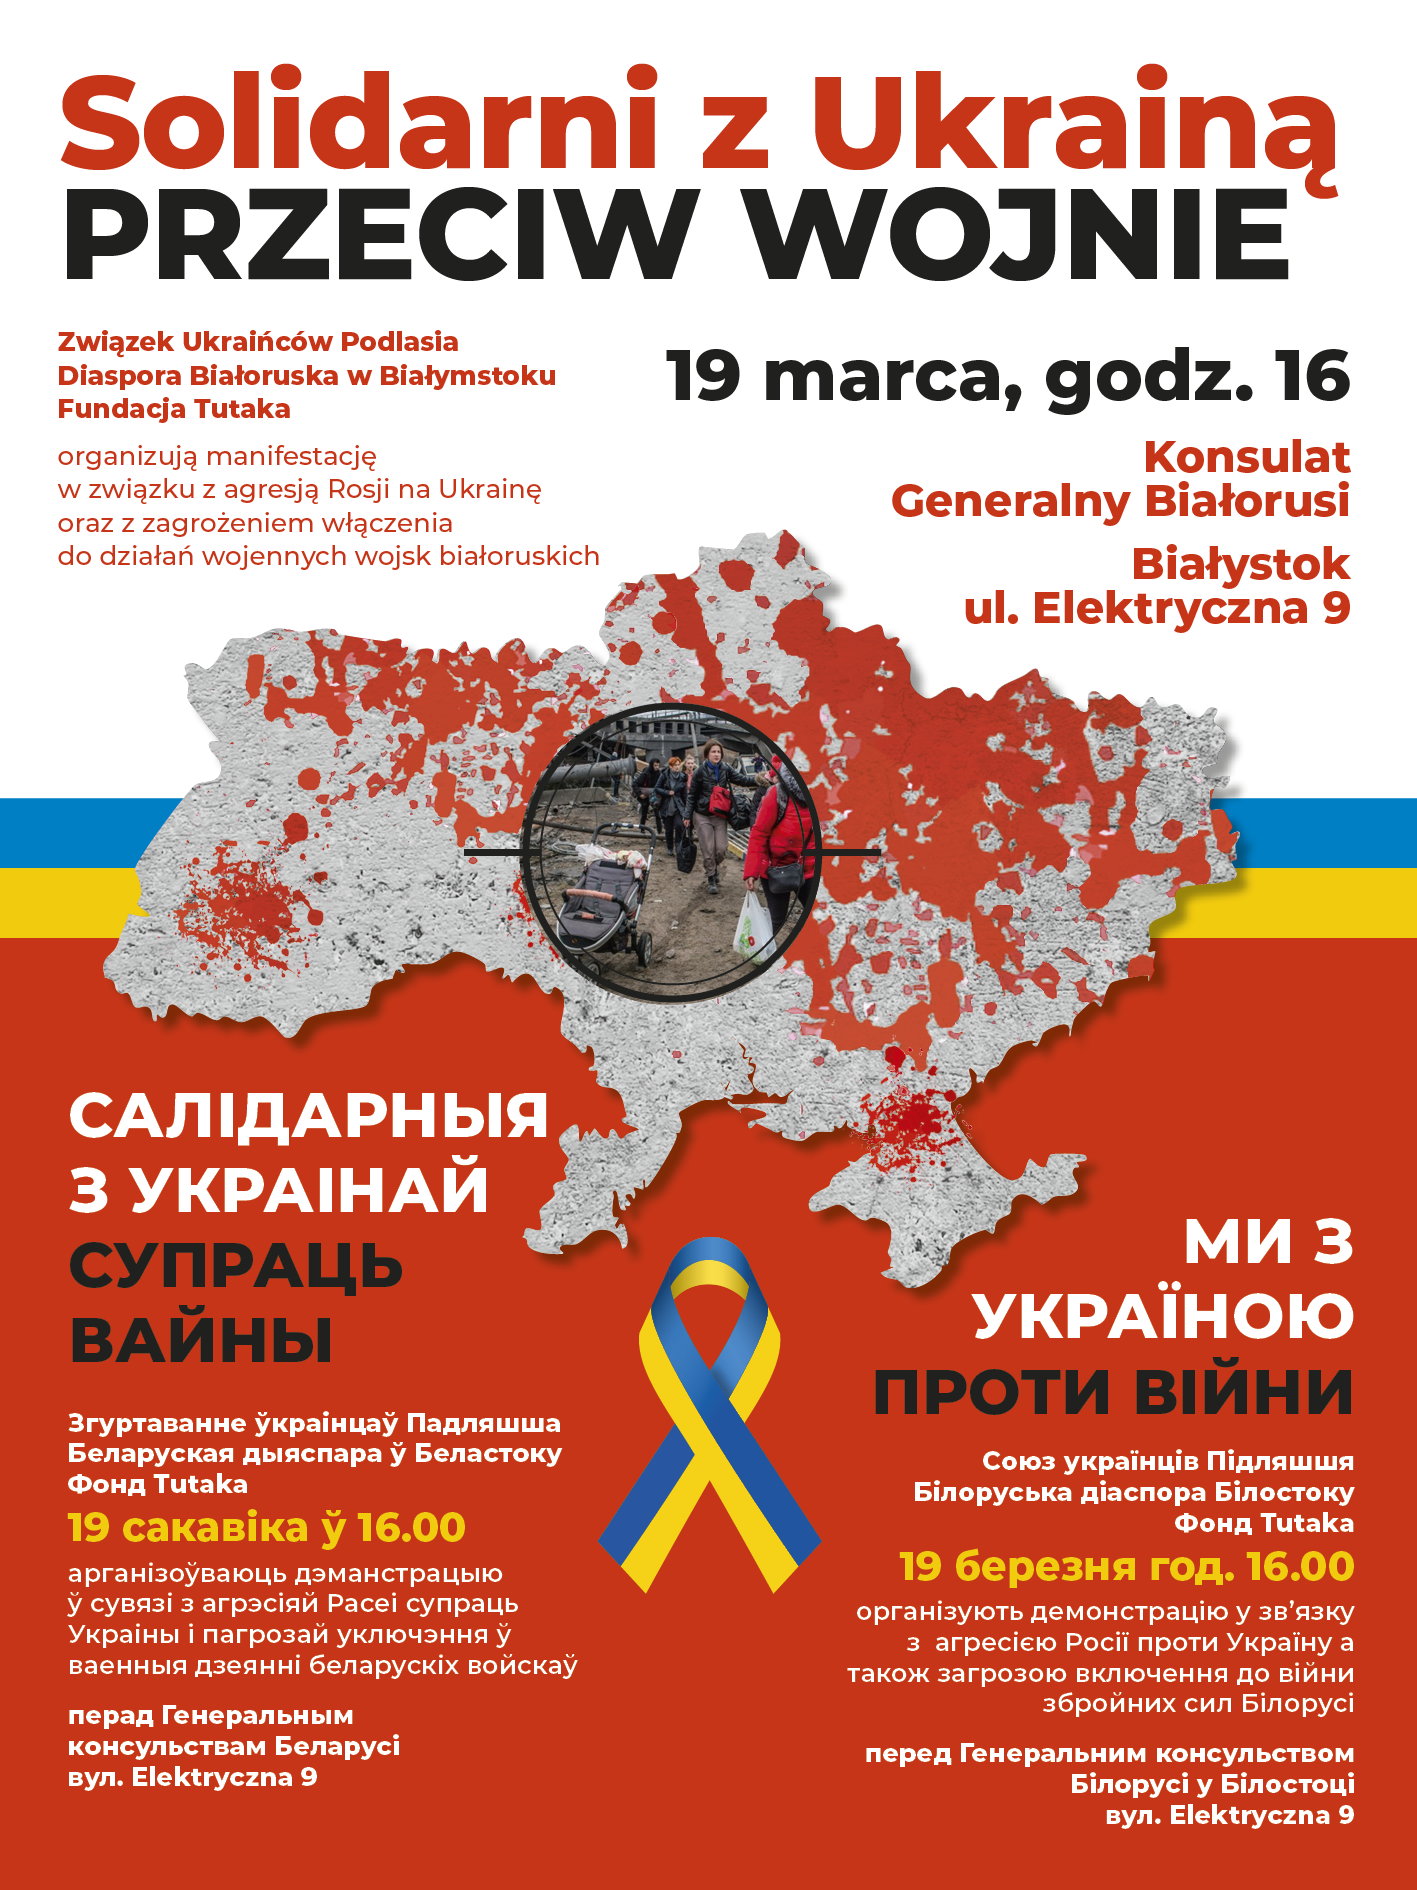 Solidarni z Ukrainą. Przeciw wojnie